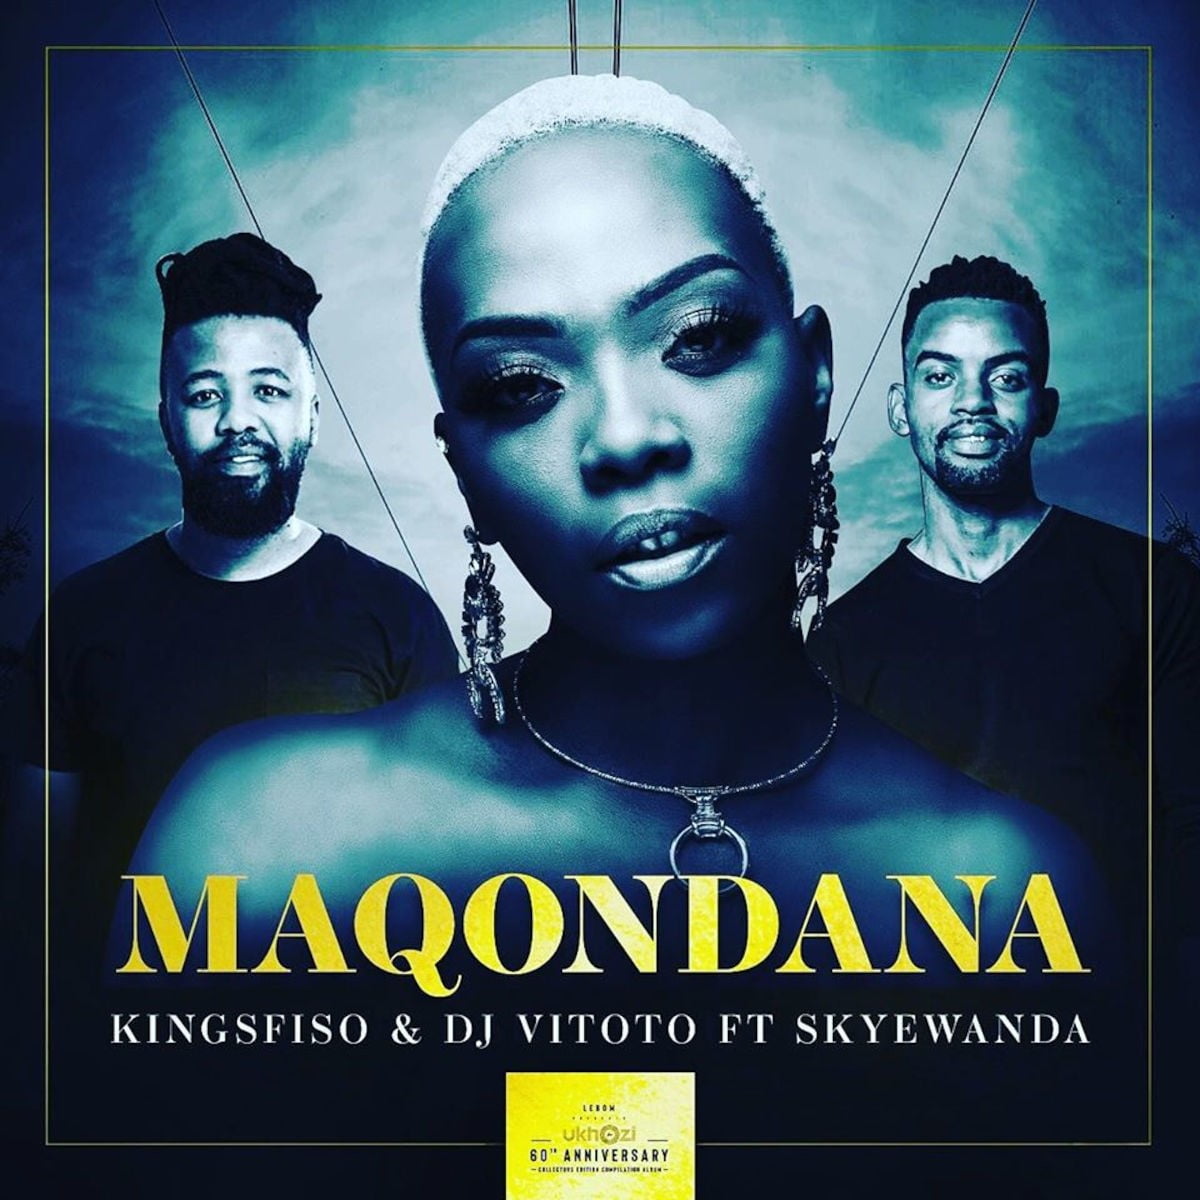 KingSfiso & DJ Vitoto feat. Skye Wanda - Maqondana